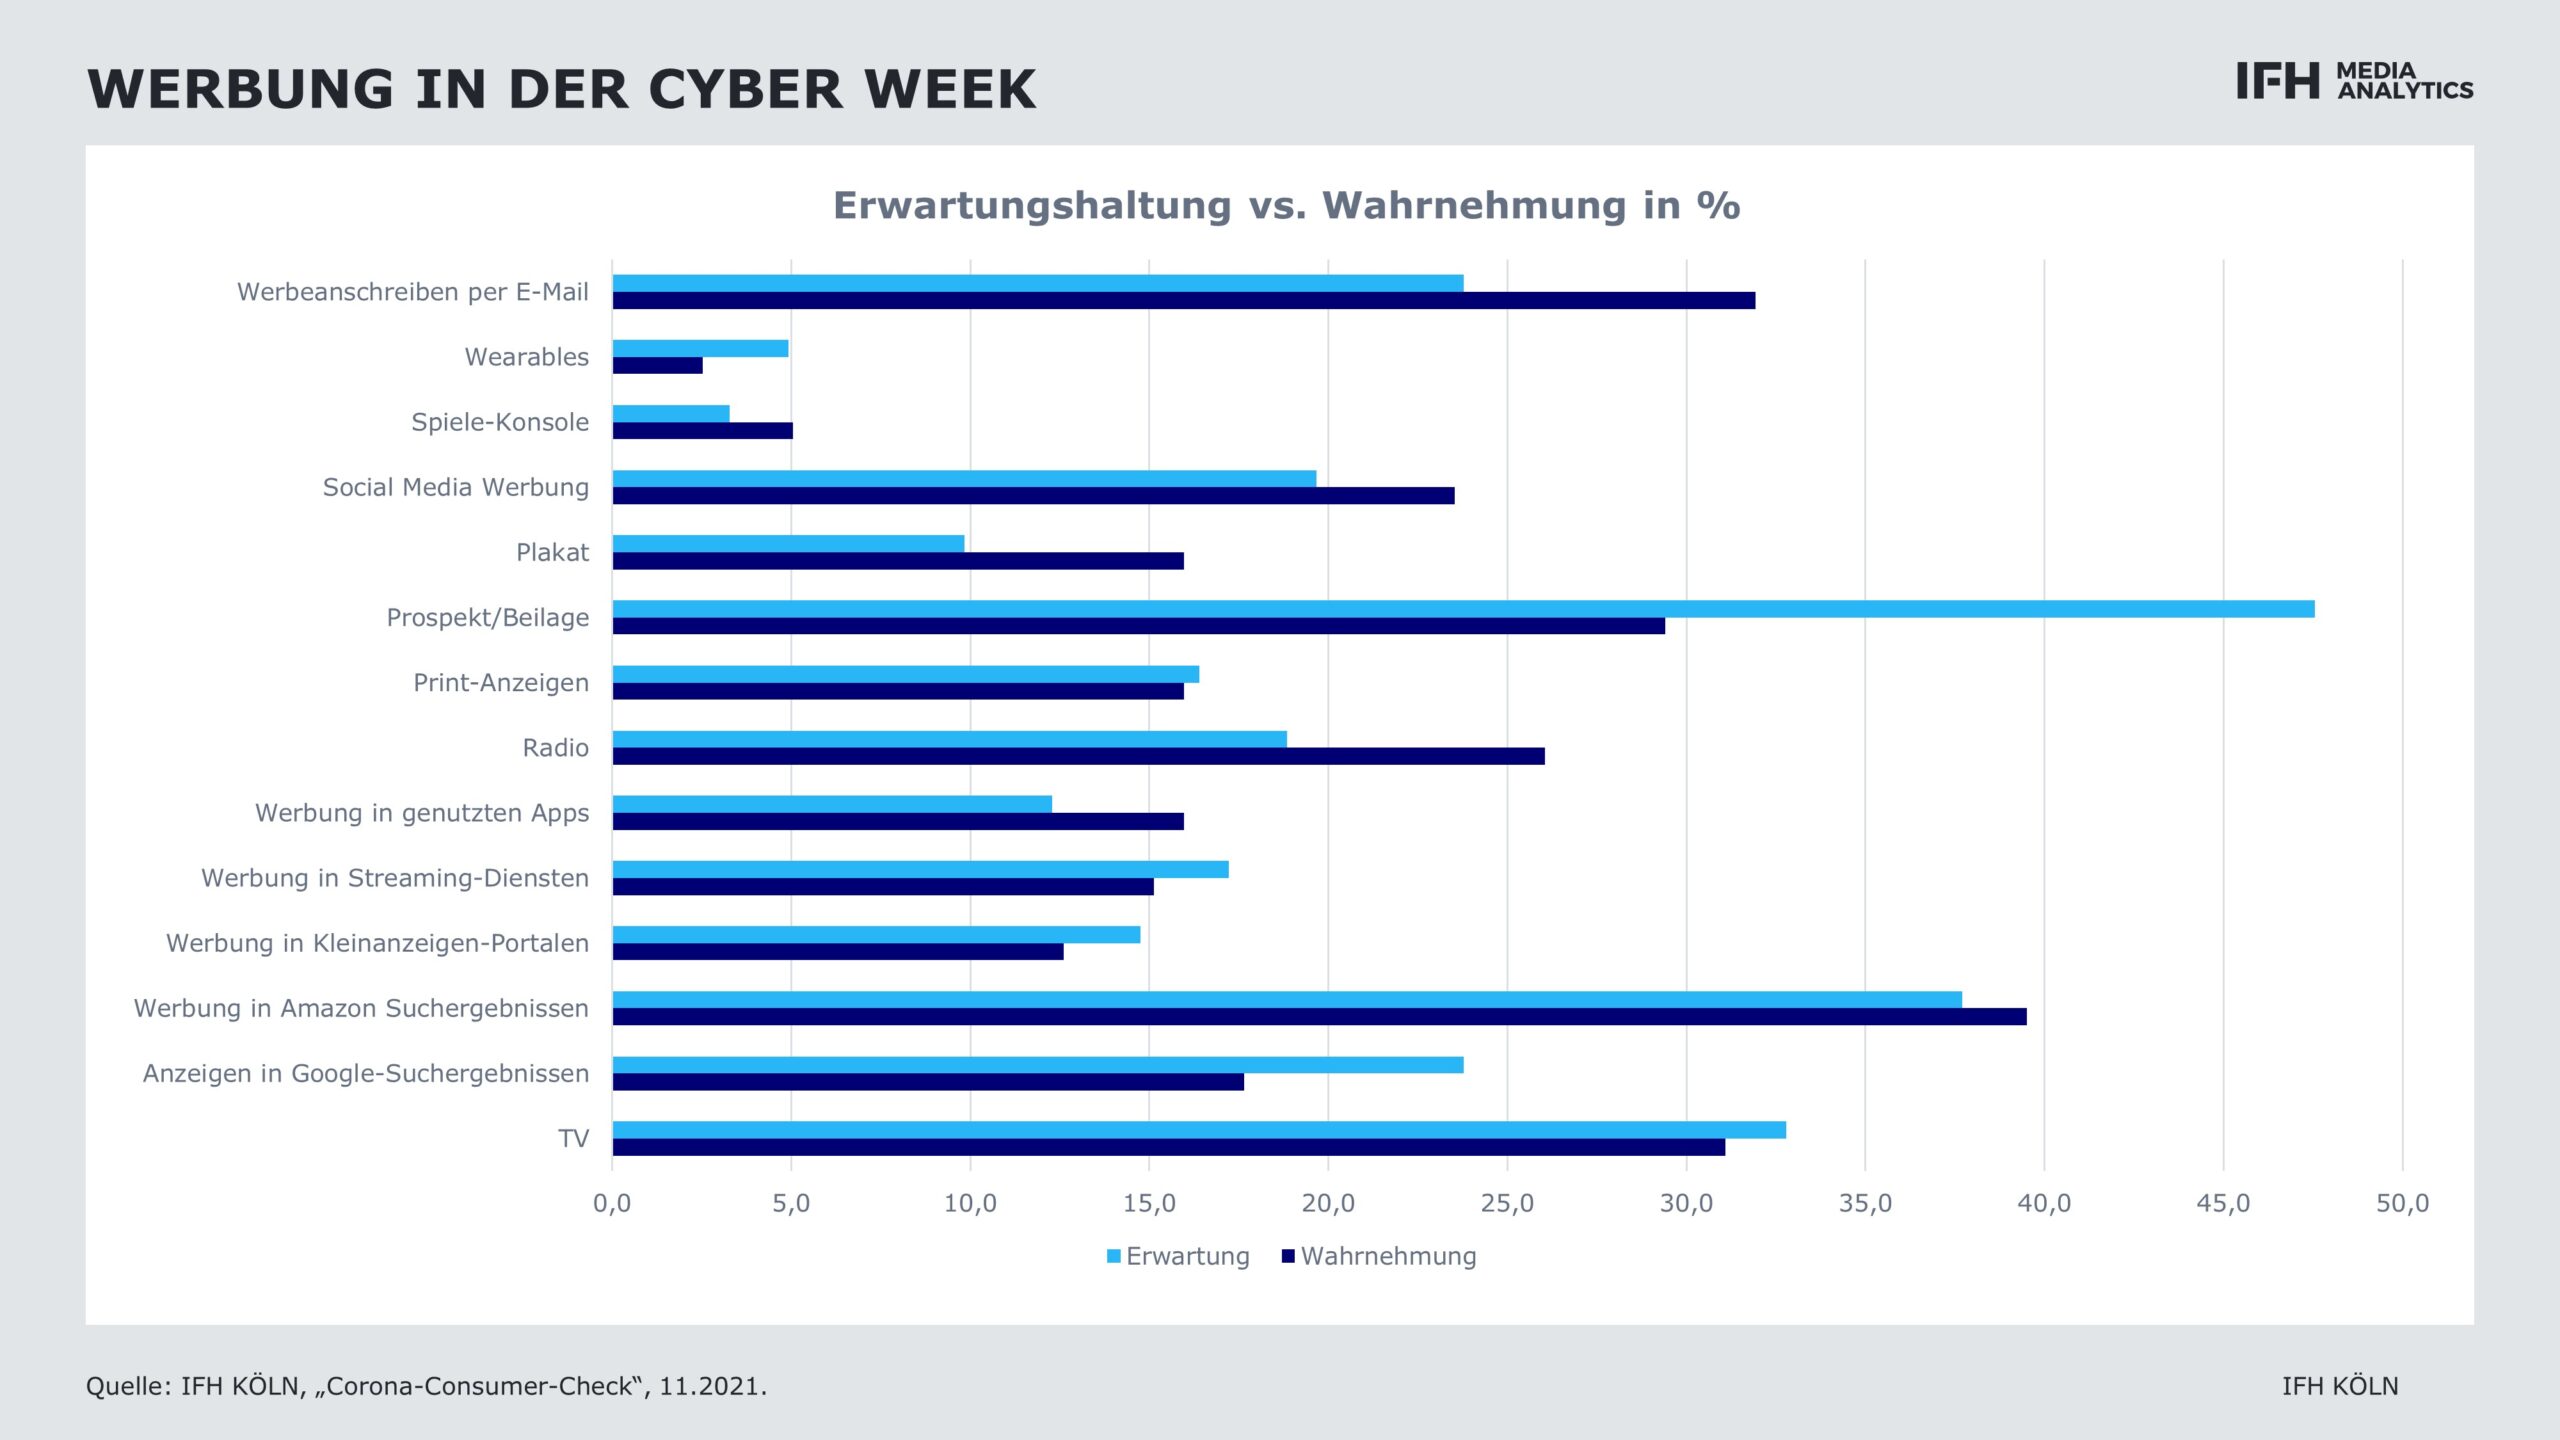 Grafik zur wahrgenommenen und erwarteten Werbekanälen ind er Cyber Week